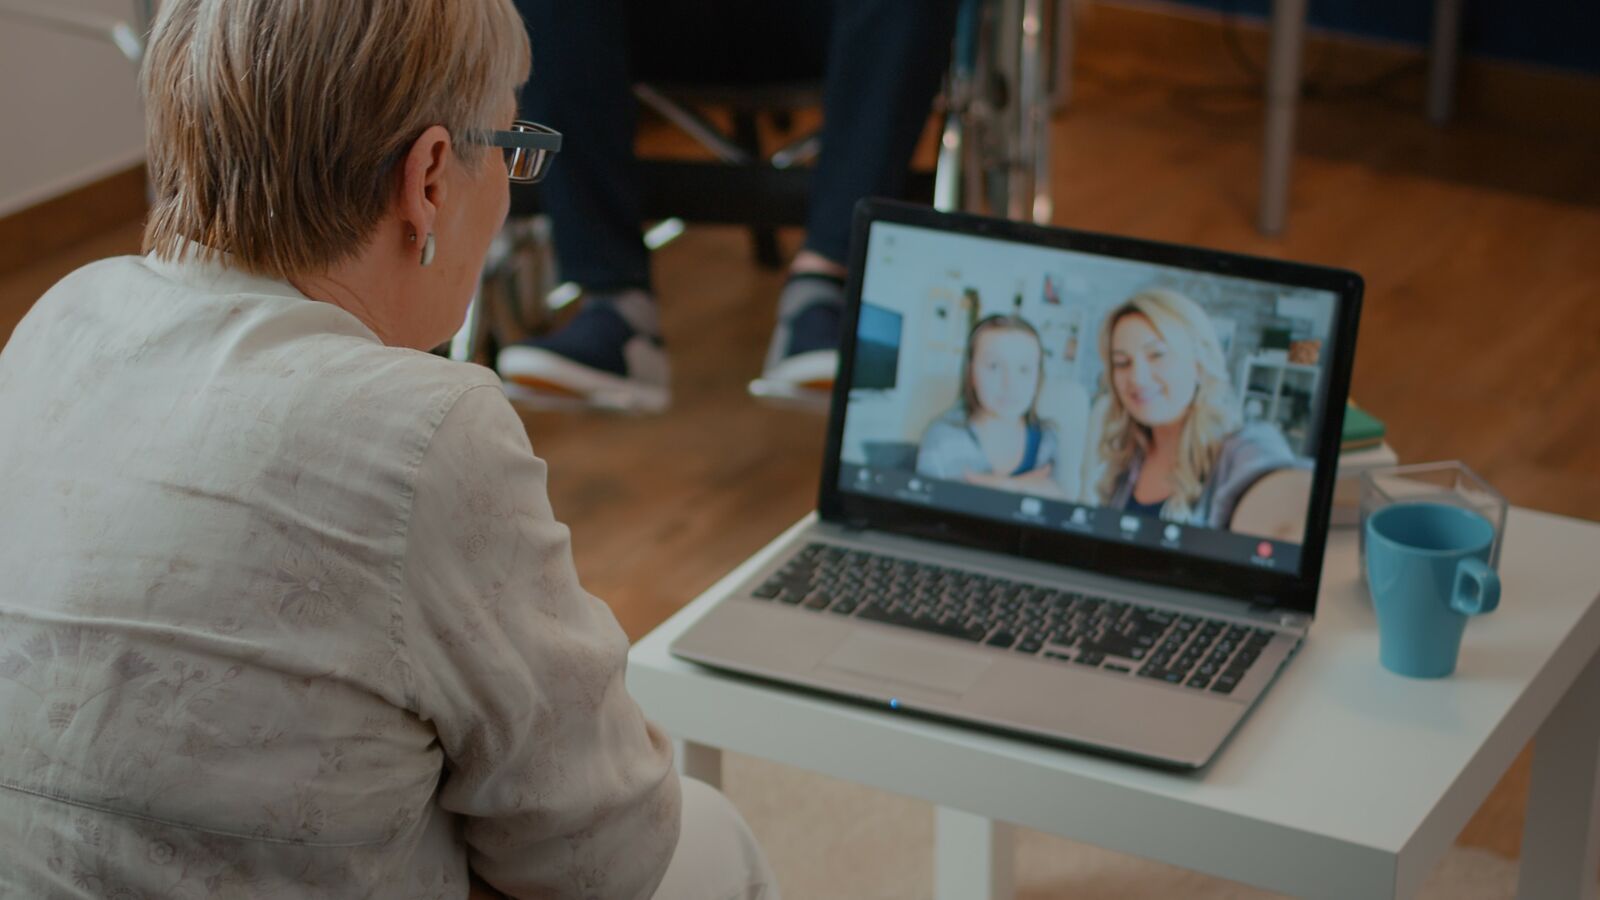 .אישה יושבת מול מסך של מחשב נייד ומשוחחת דרכו עם שתי נשים נוספות, אשר תמונתן מופיעה על המסך